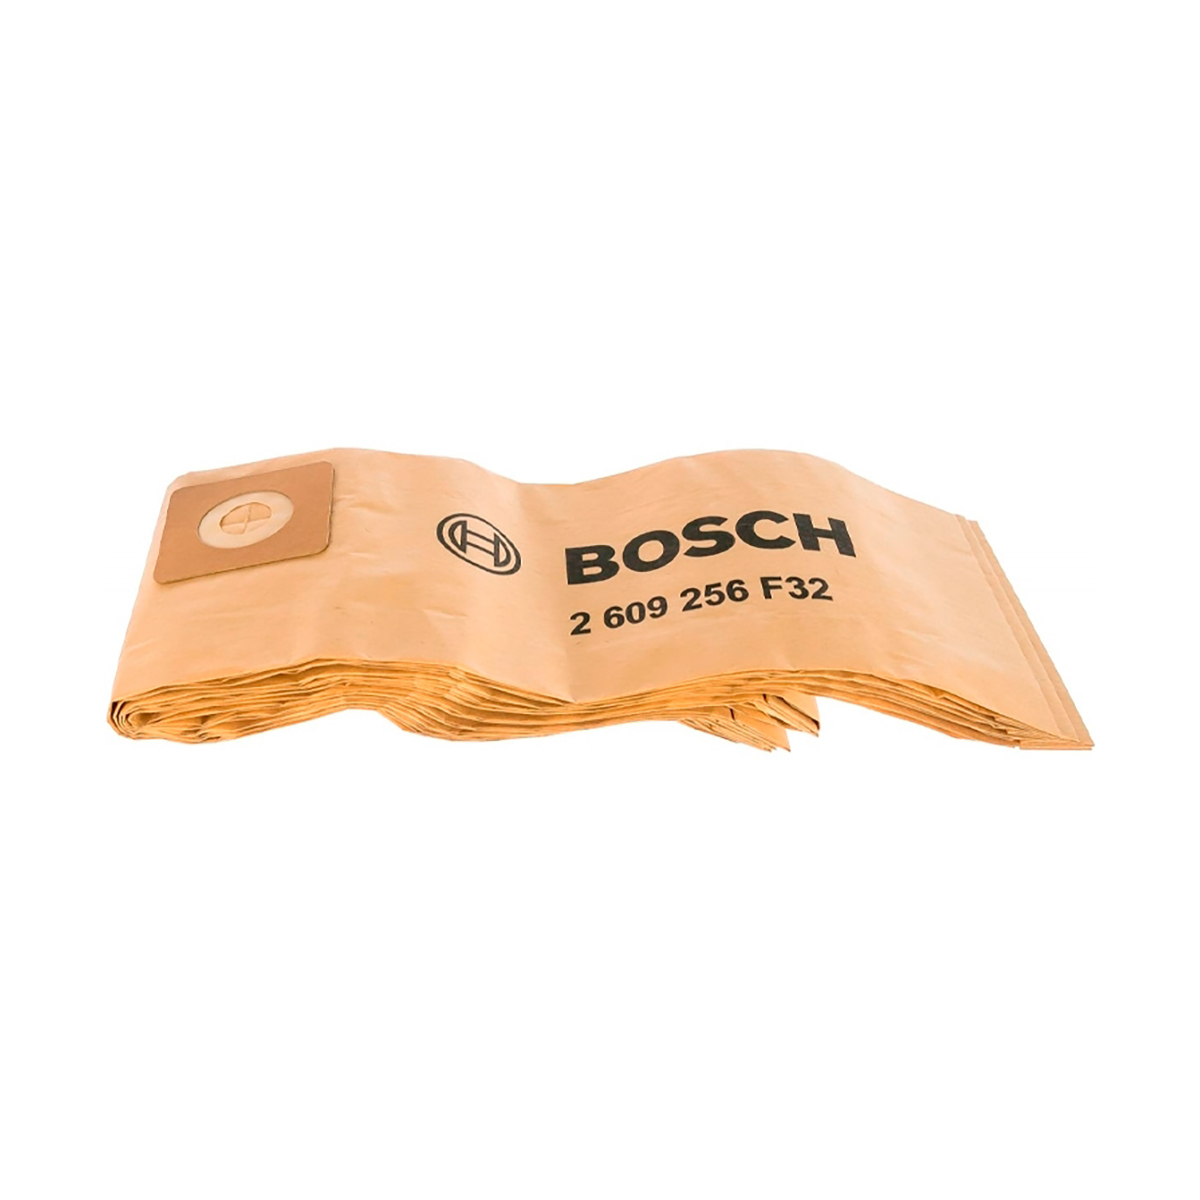 Мешки для пылесоса "bosch" vac 15  бумажные (упак. 5 шт.) (1) 2609256f32